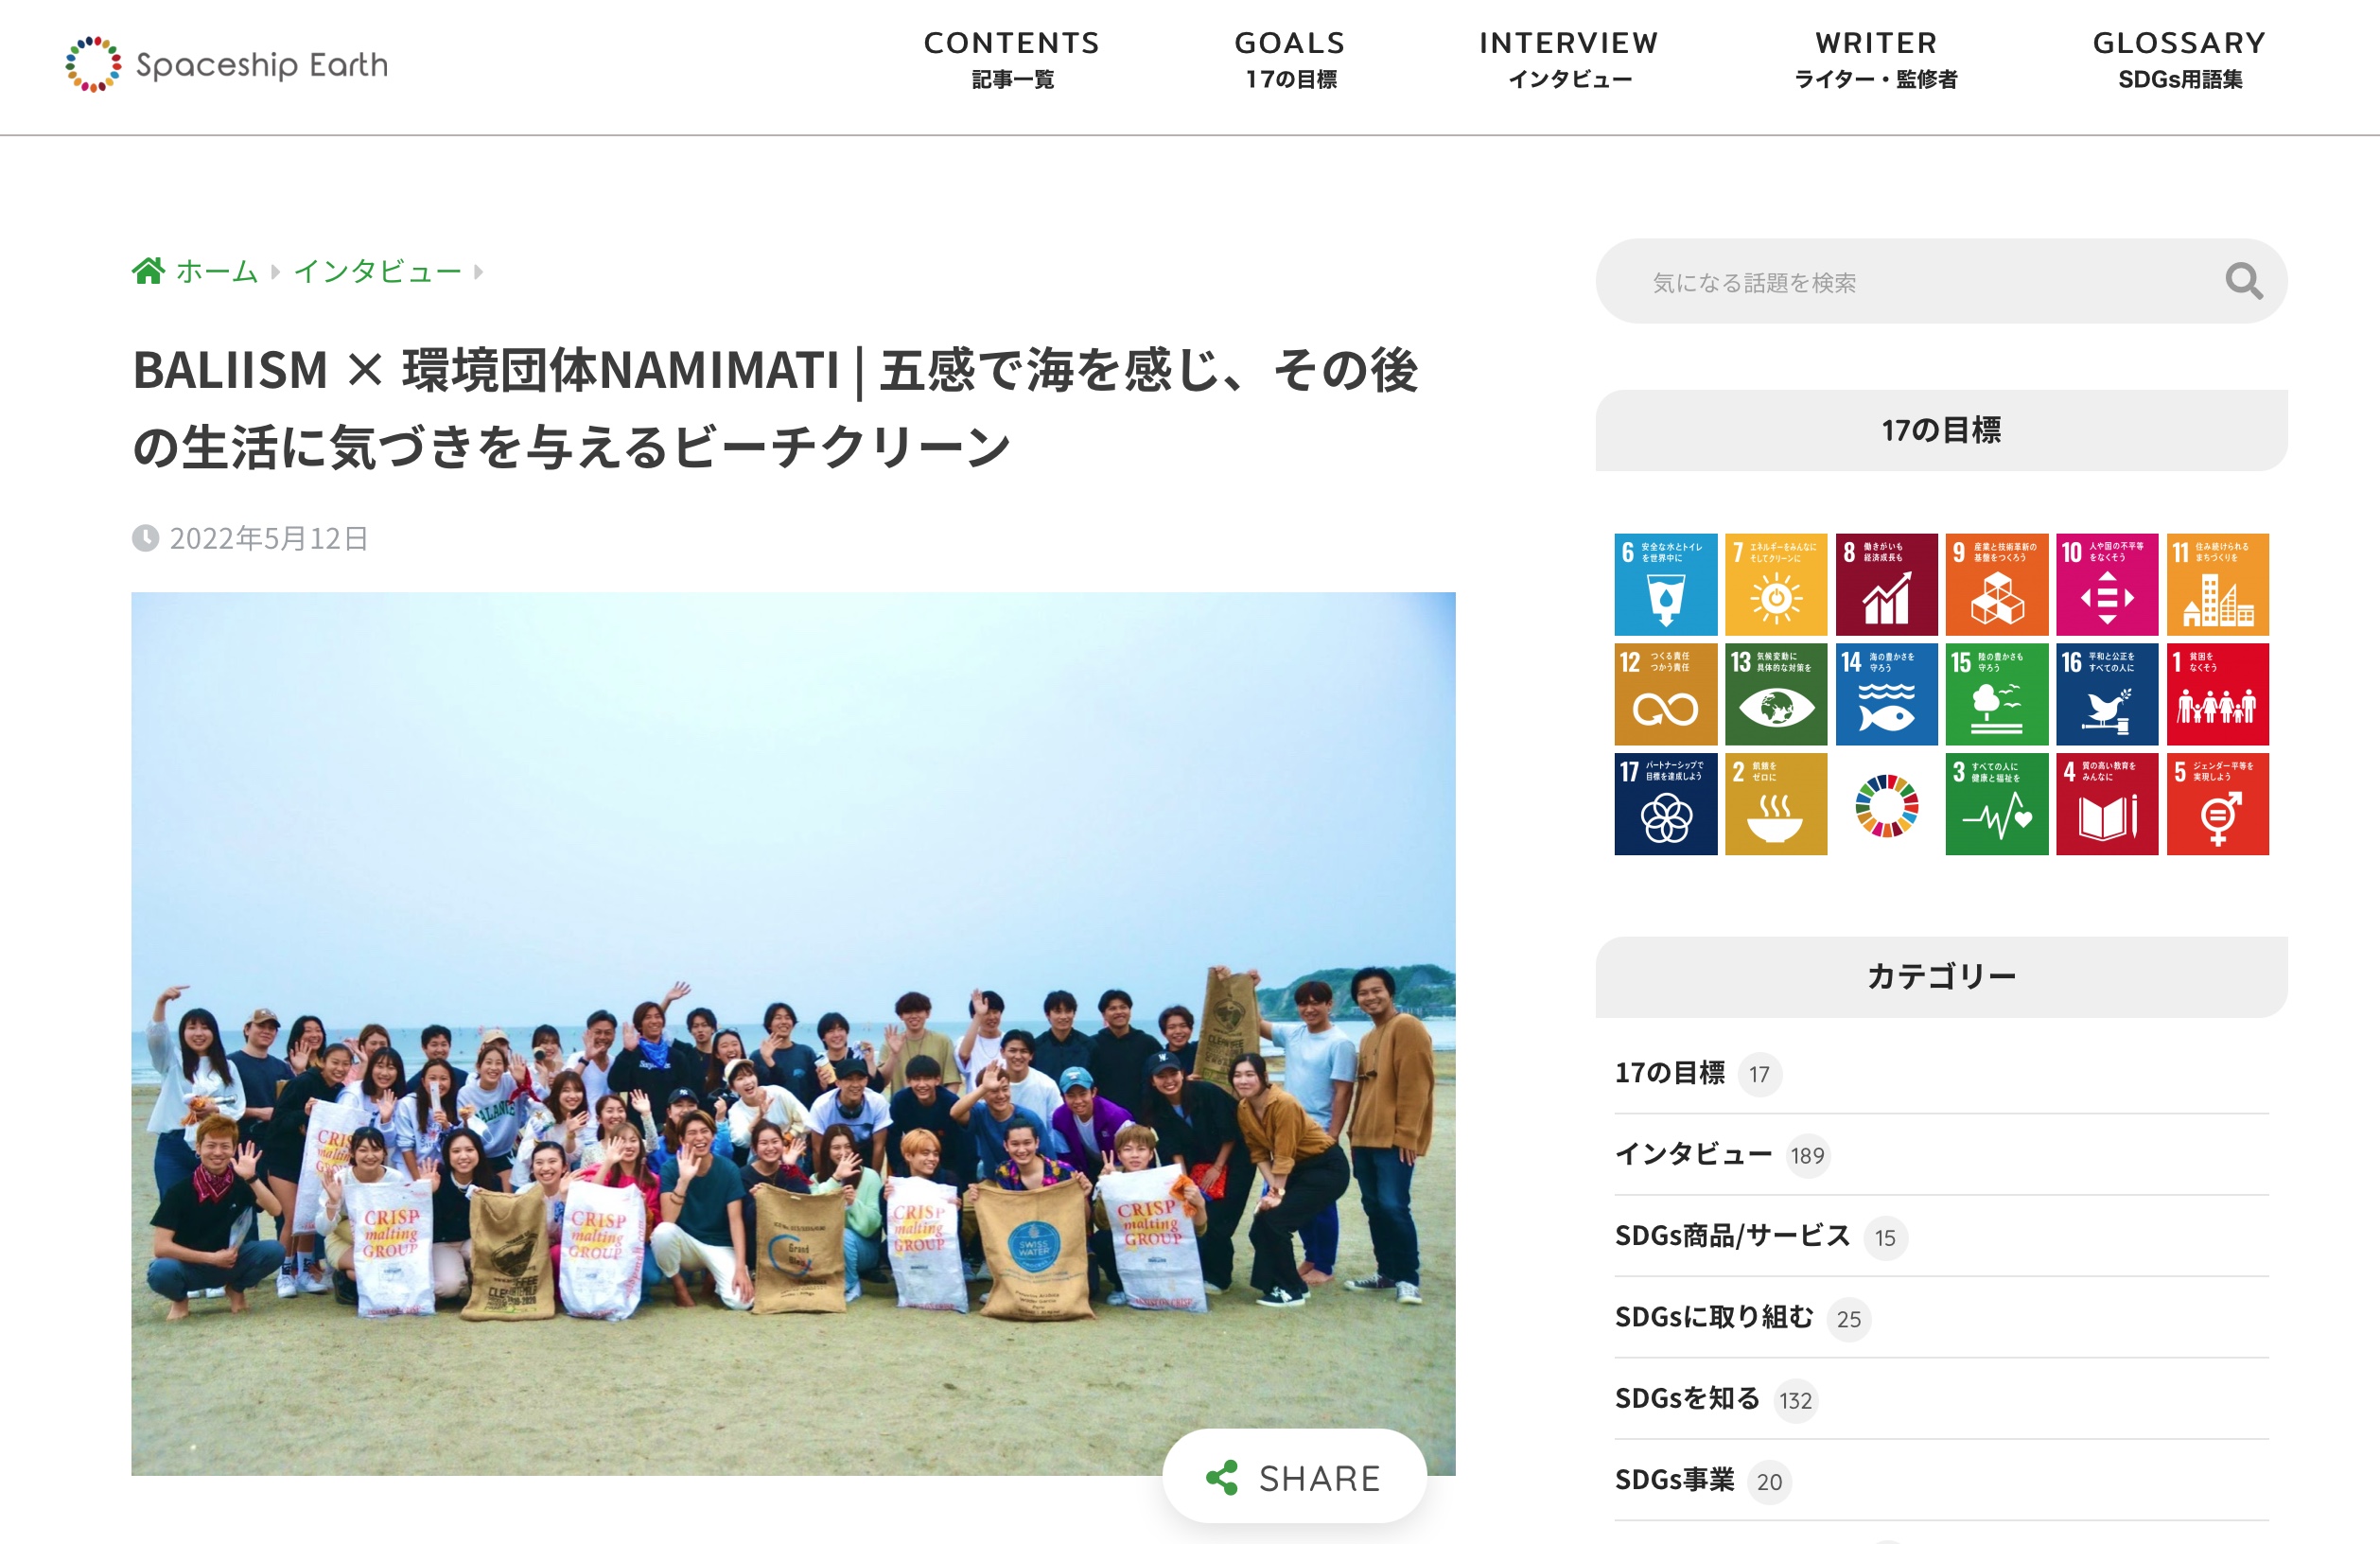 鎌倉・材木座海岸で行ったビーチクリーンイベントがSDGsメディアに掲載されました